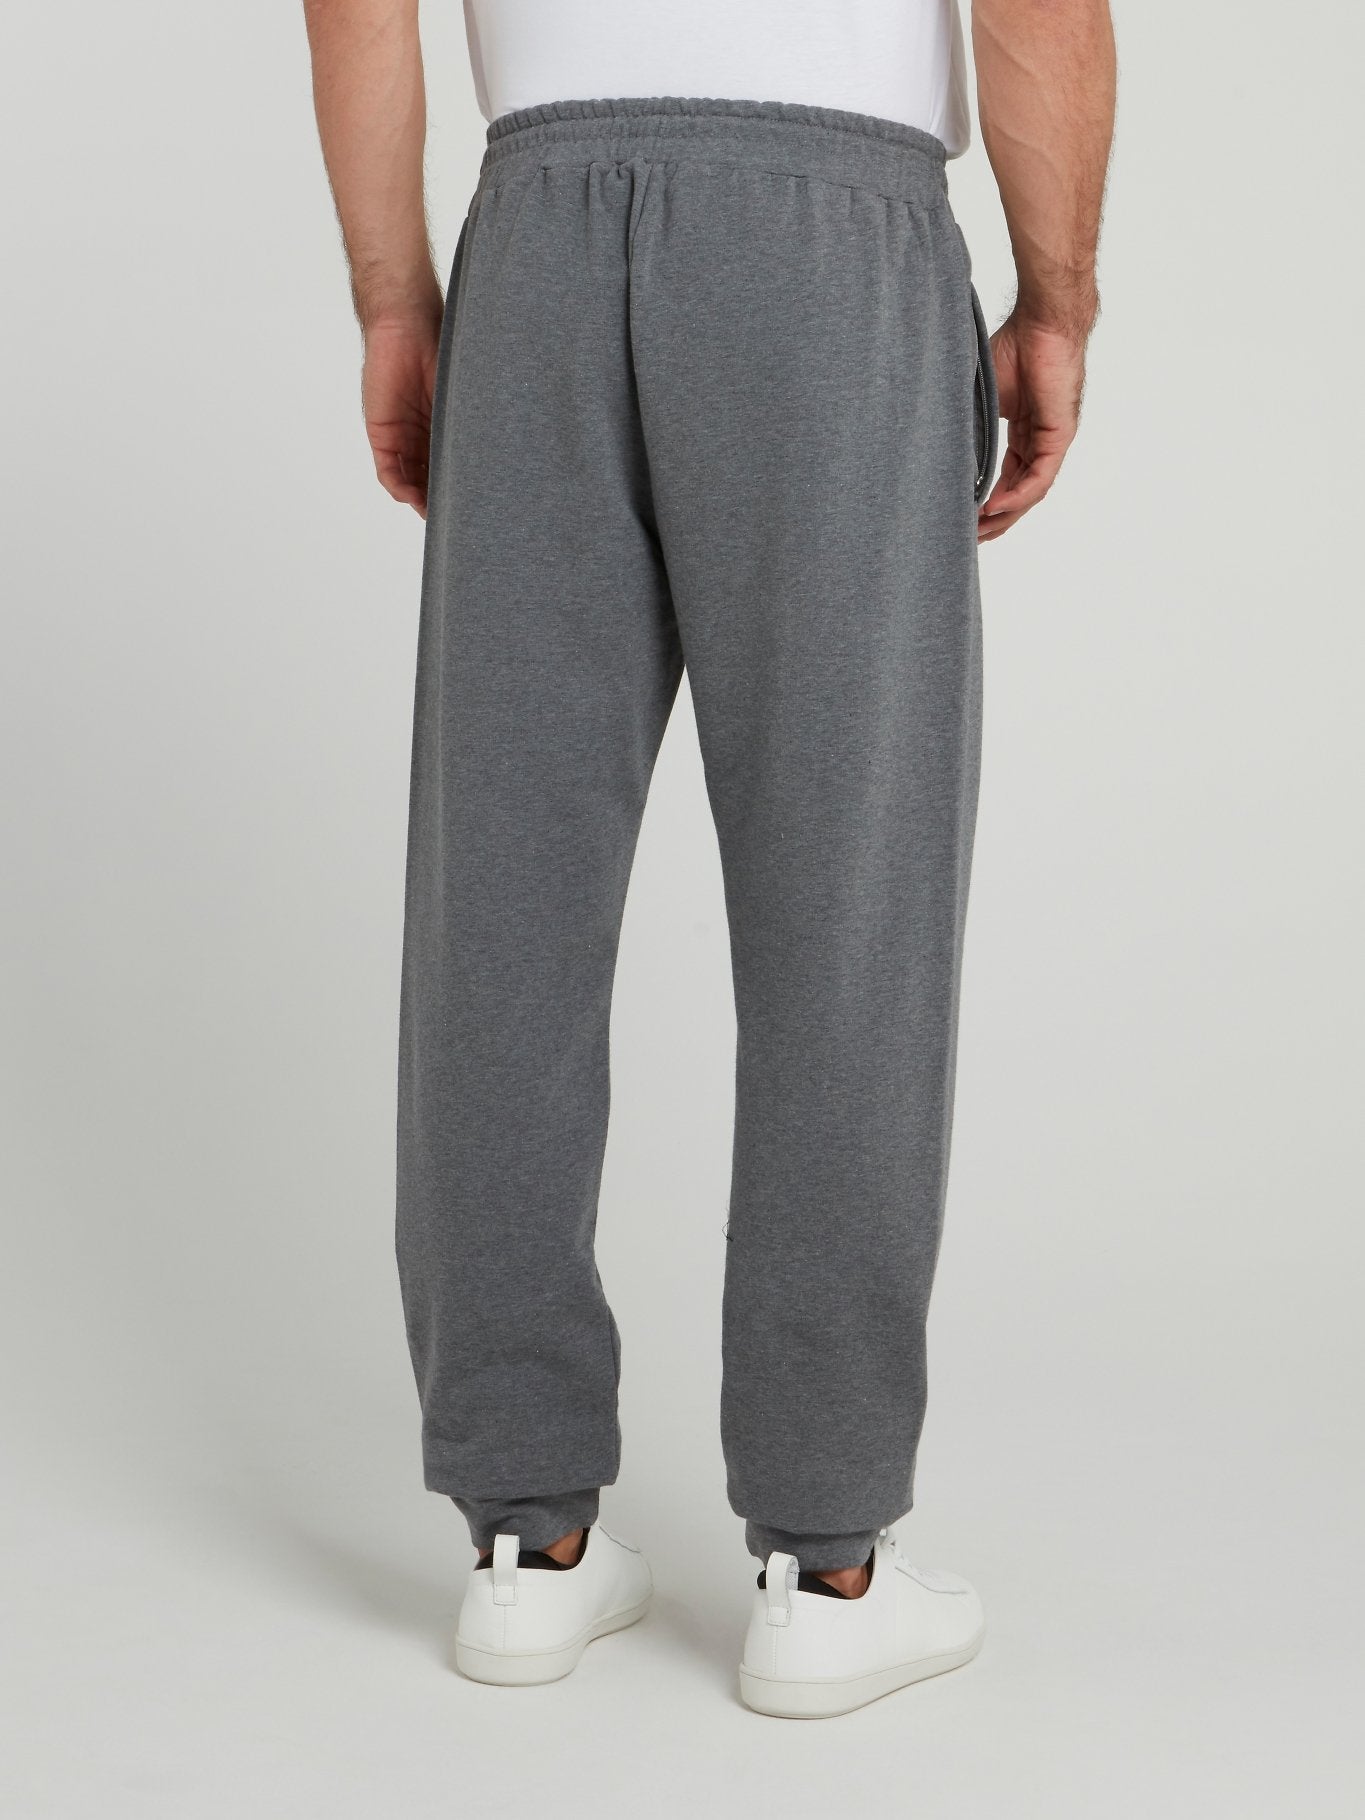 Grey Knitted Fleece Pants